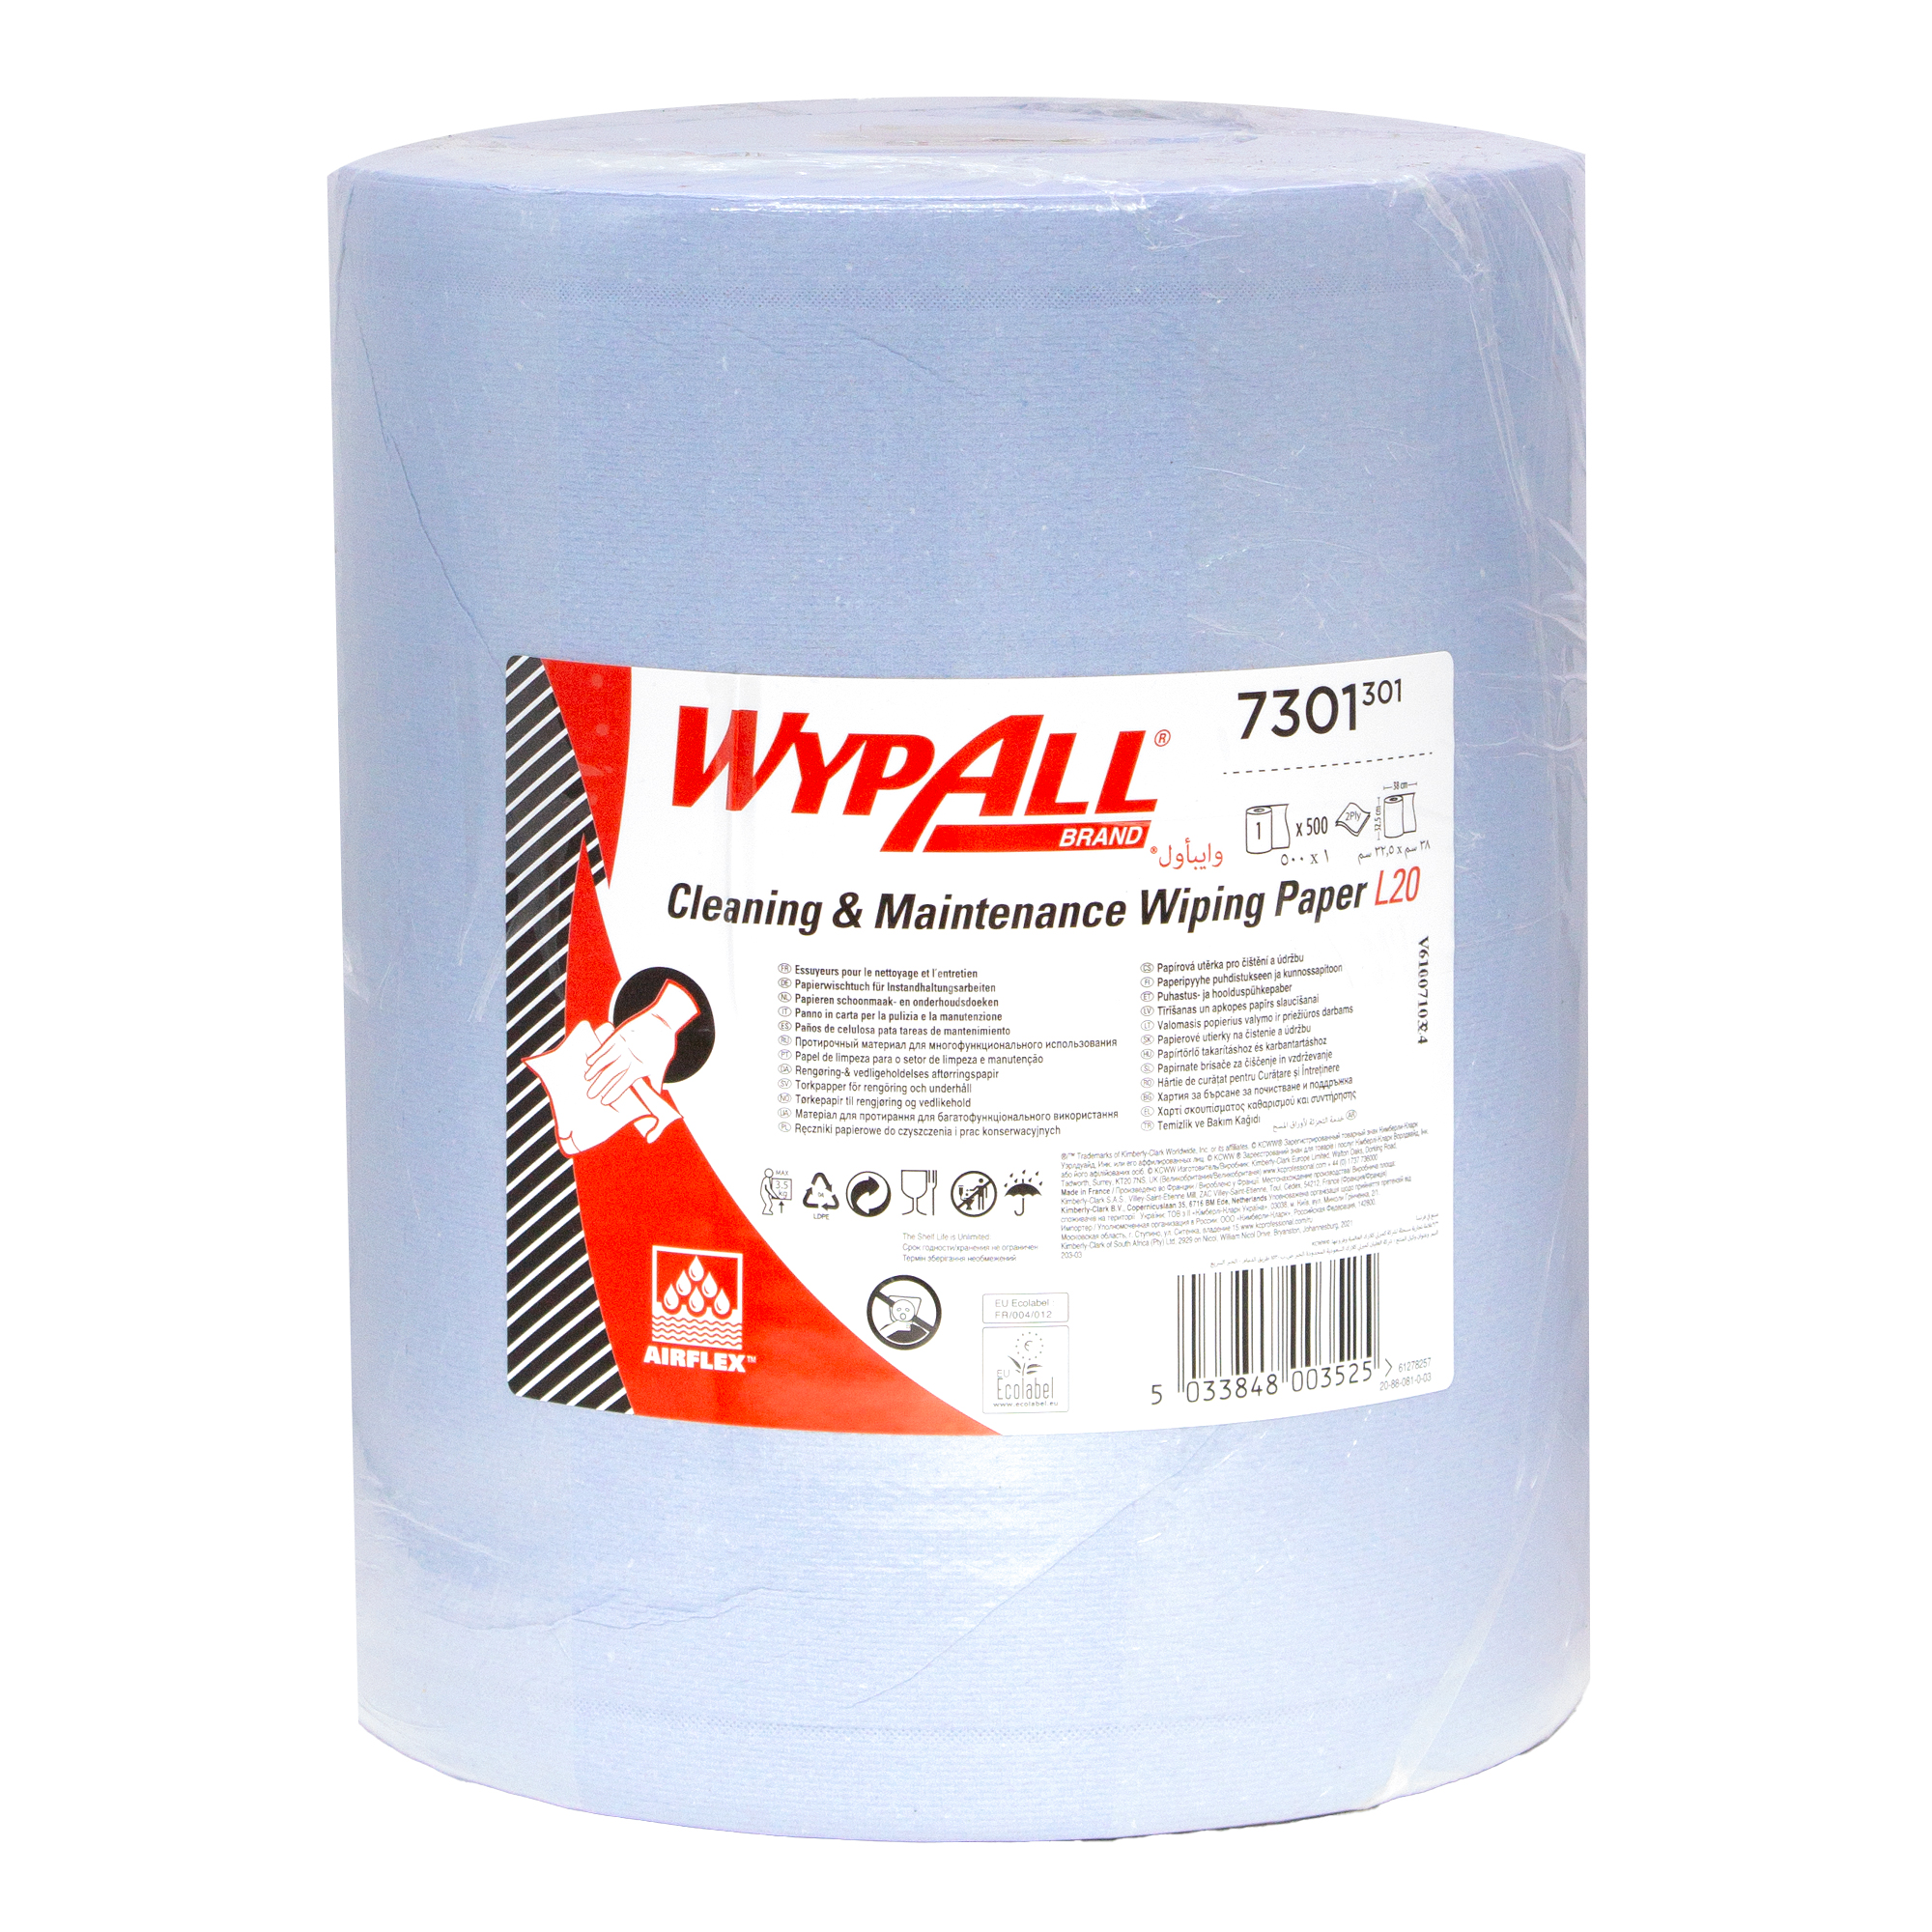 WypAll 7301 Reinigungs- & Wartungs-Wischtücher Großrolle extra breit L20 blau 2-lagig, 32,5 cm breit, 500 Tücher